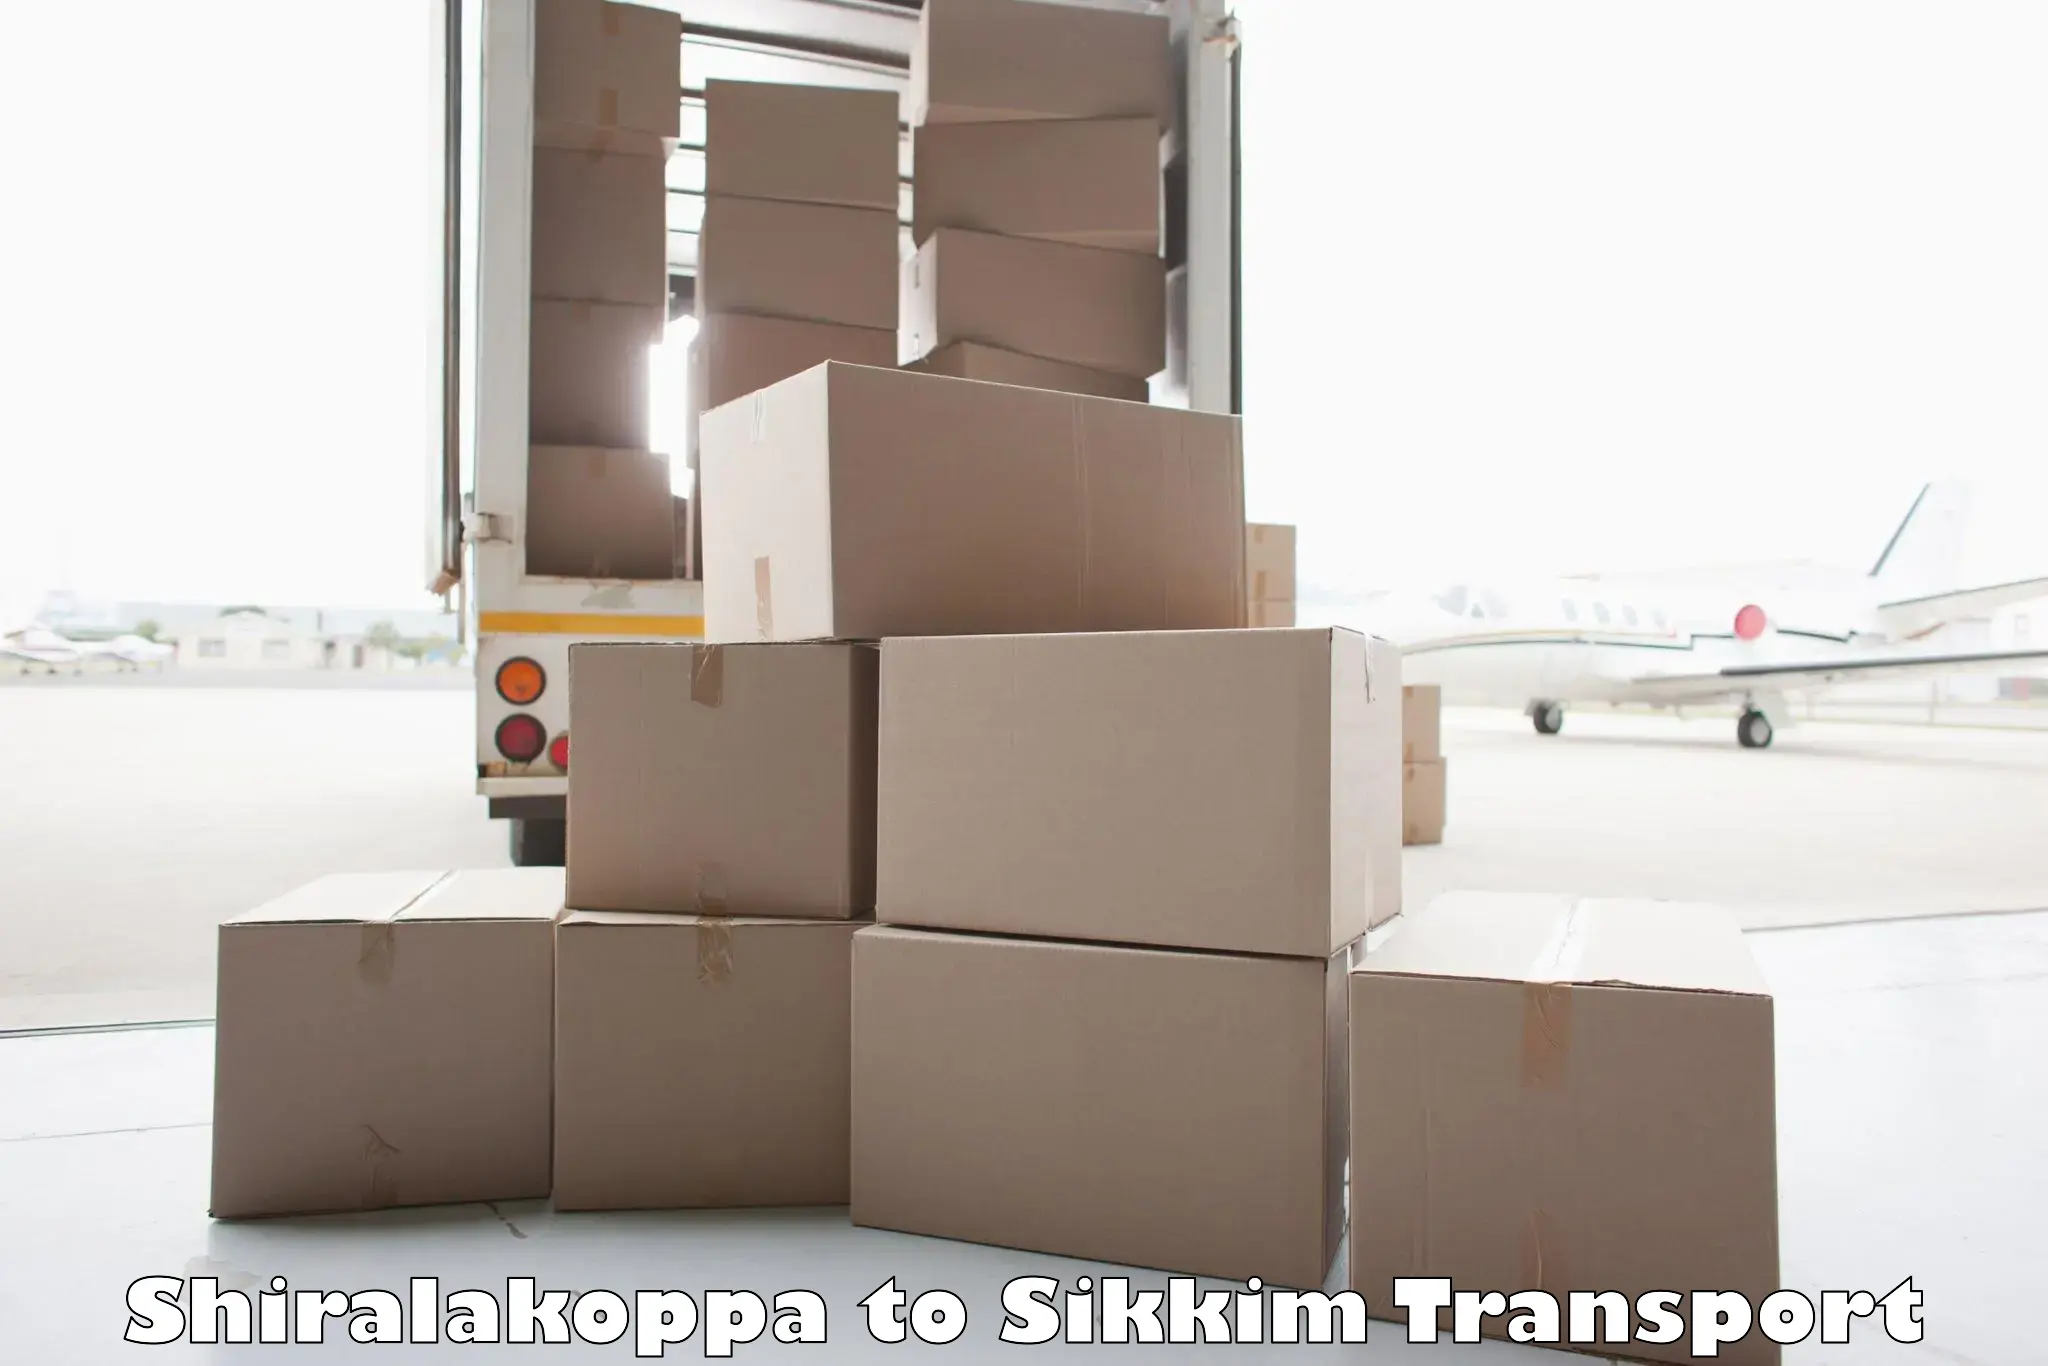 Truck transport companies in India Shiralakoppa to Sikkim